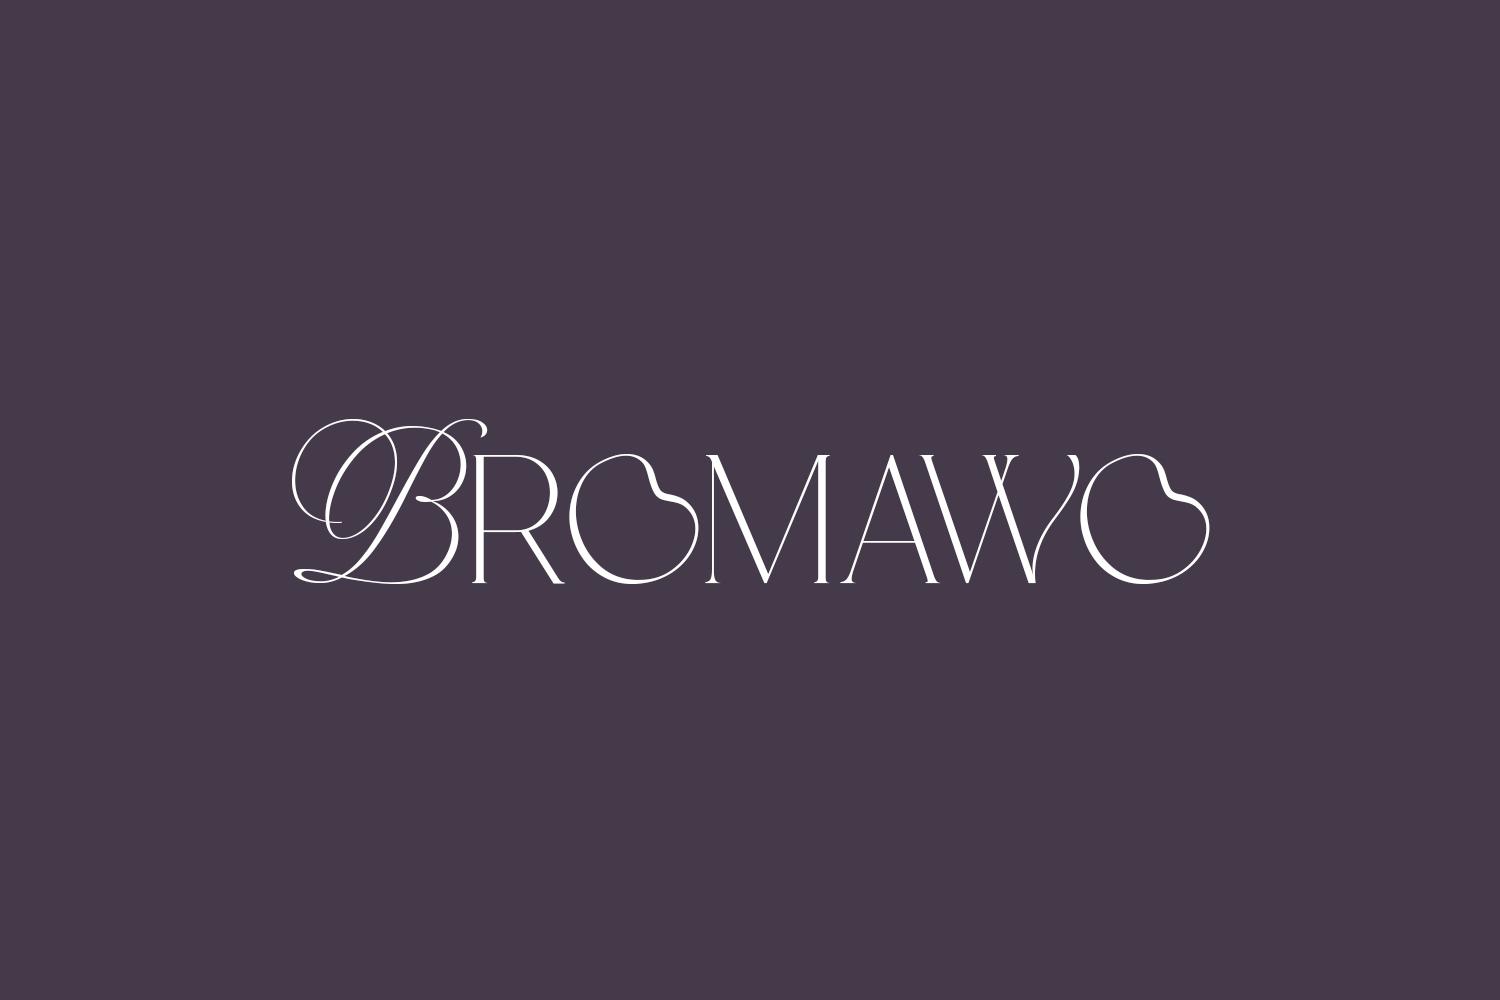 Bromawo Free Font